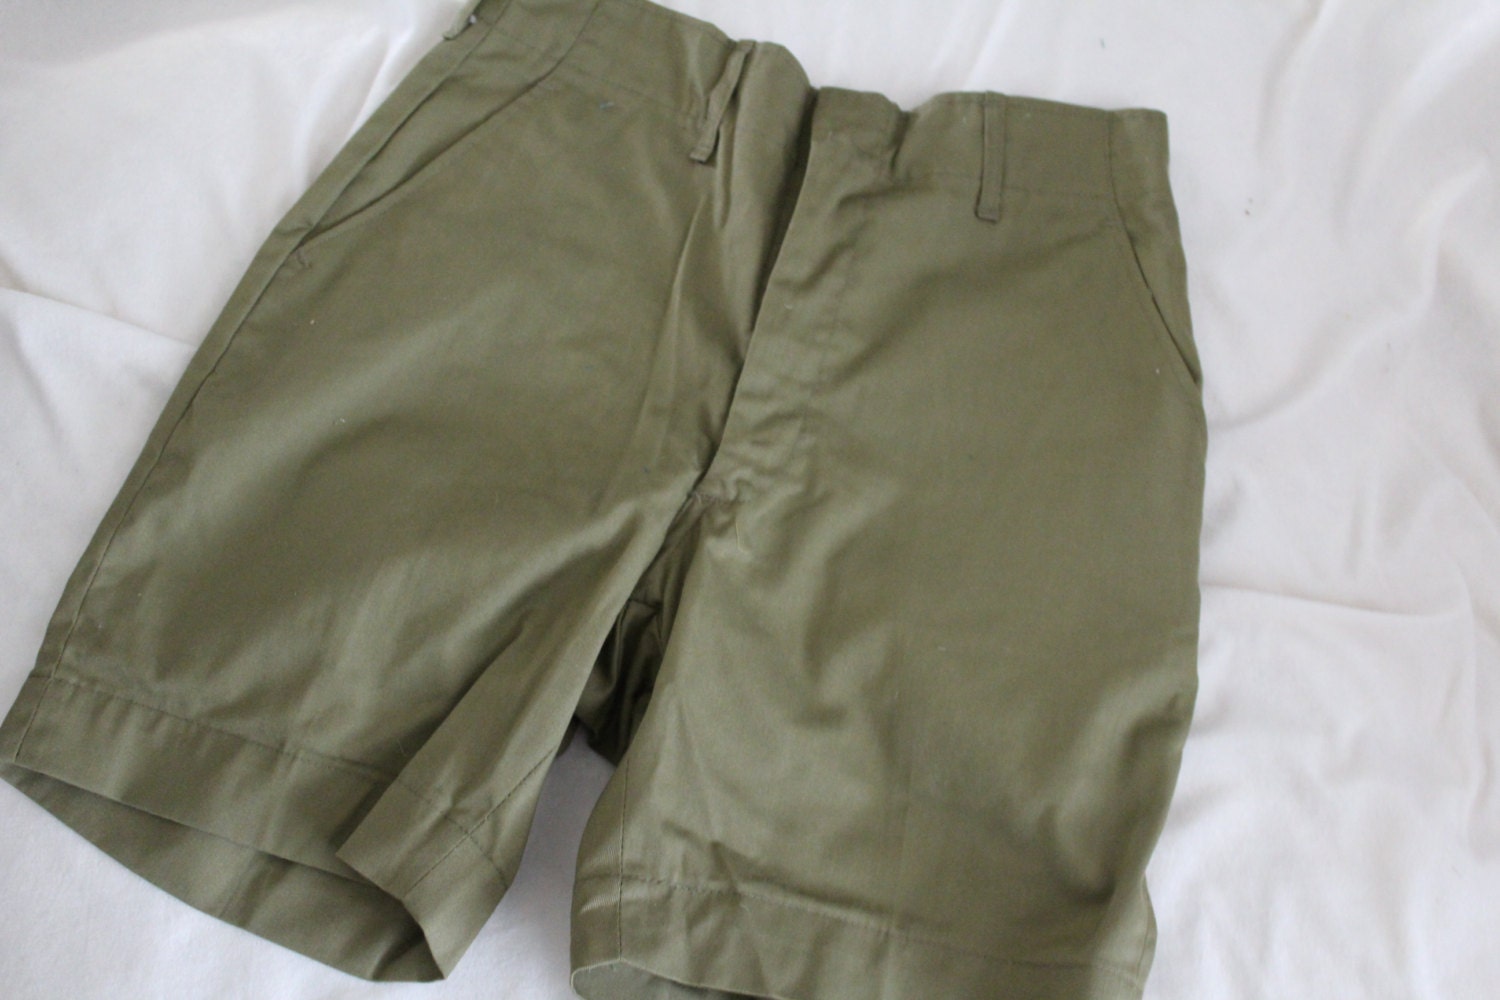 Scout Uniform Shorts 71